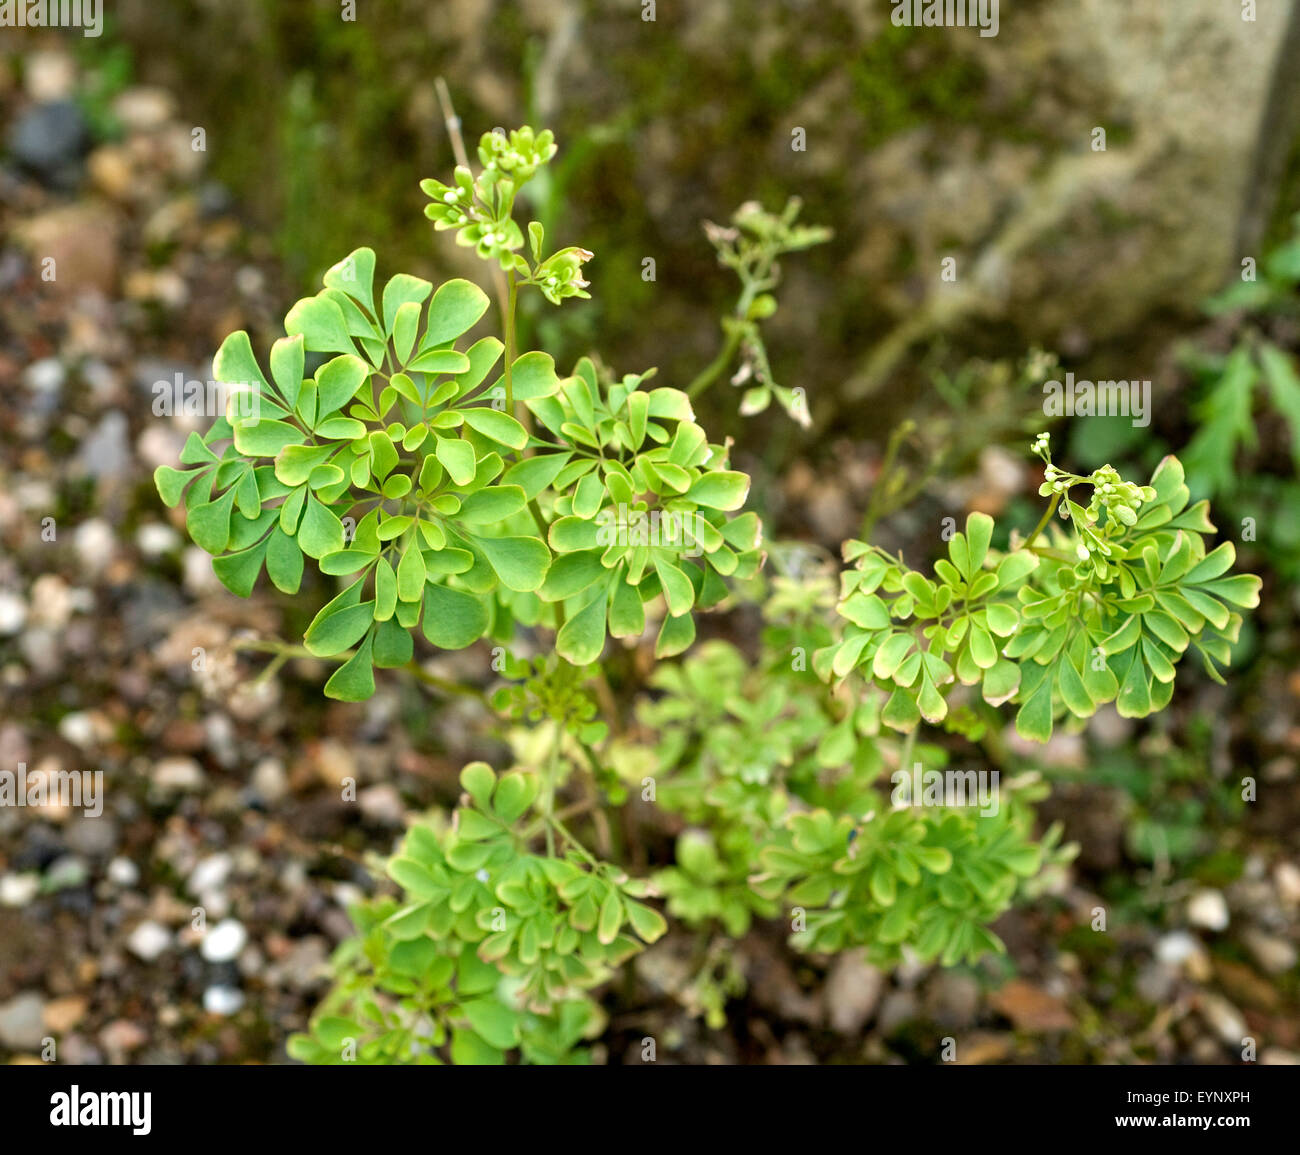 Boenninghausenia, albiflora, Foto de stock